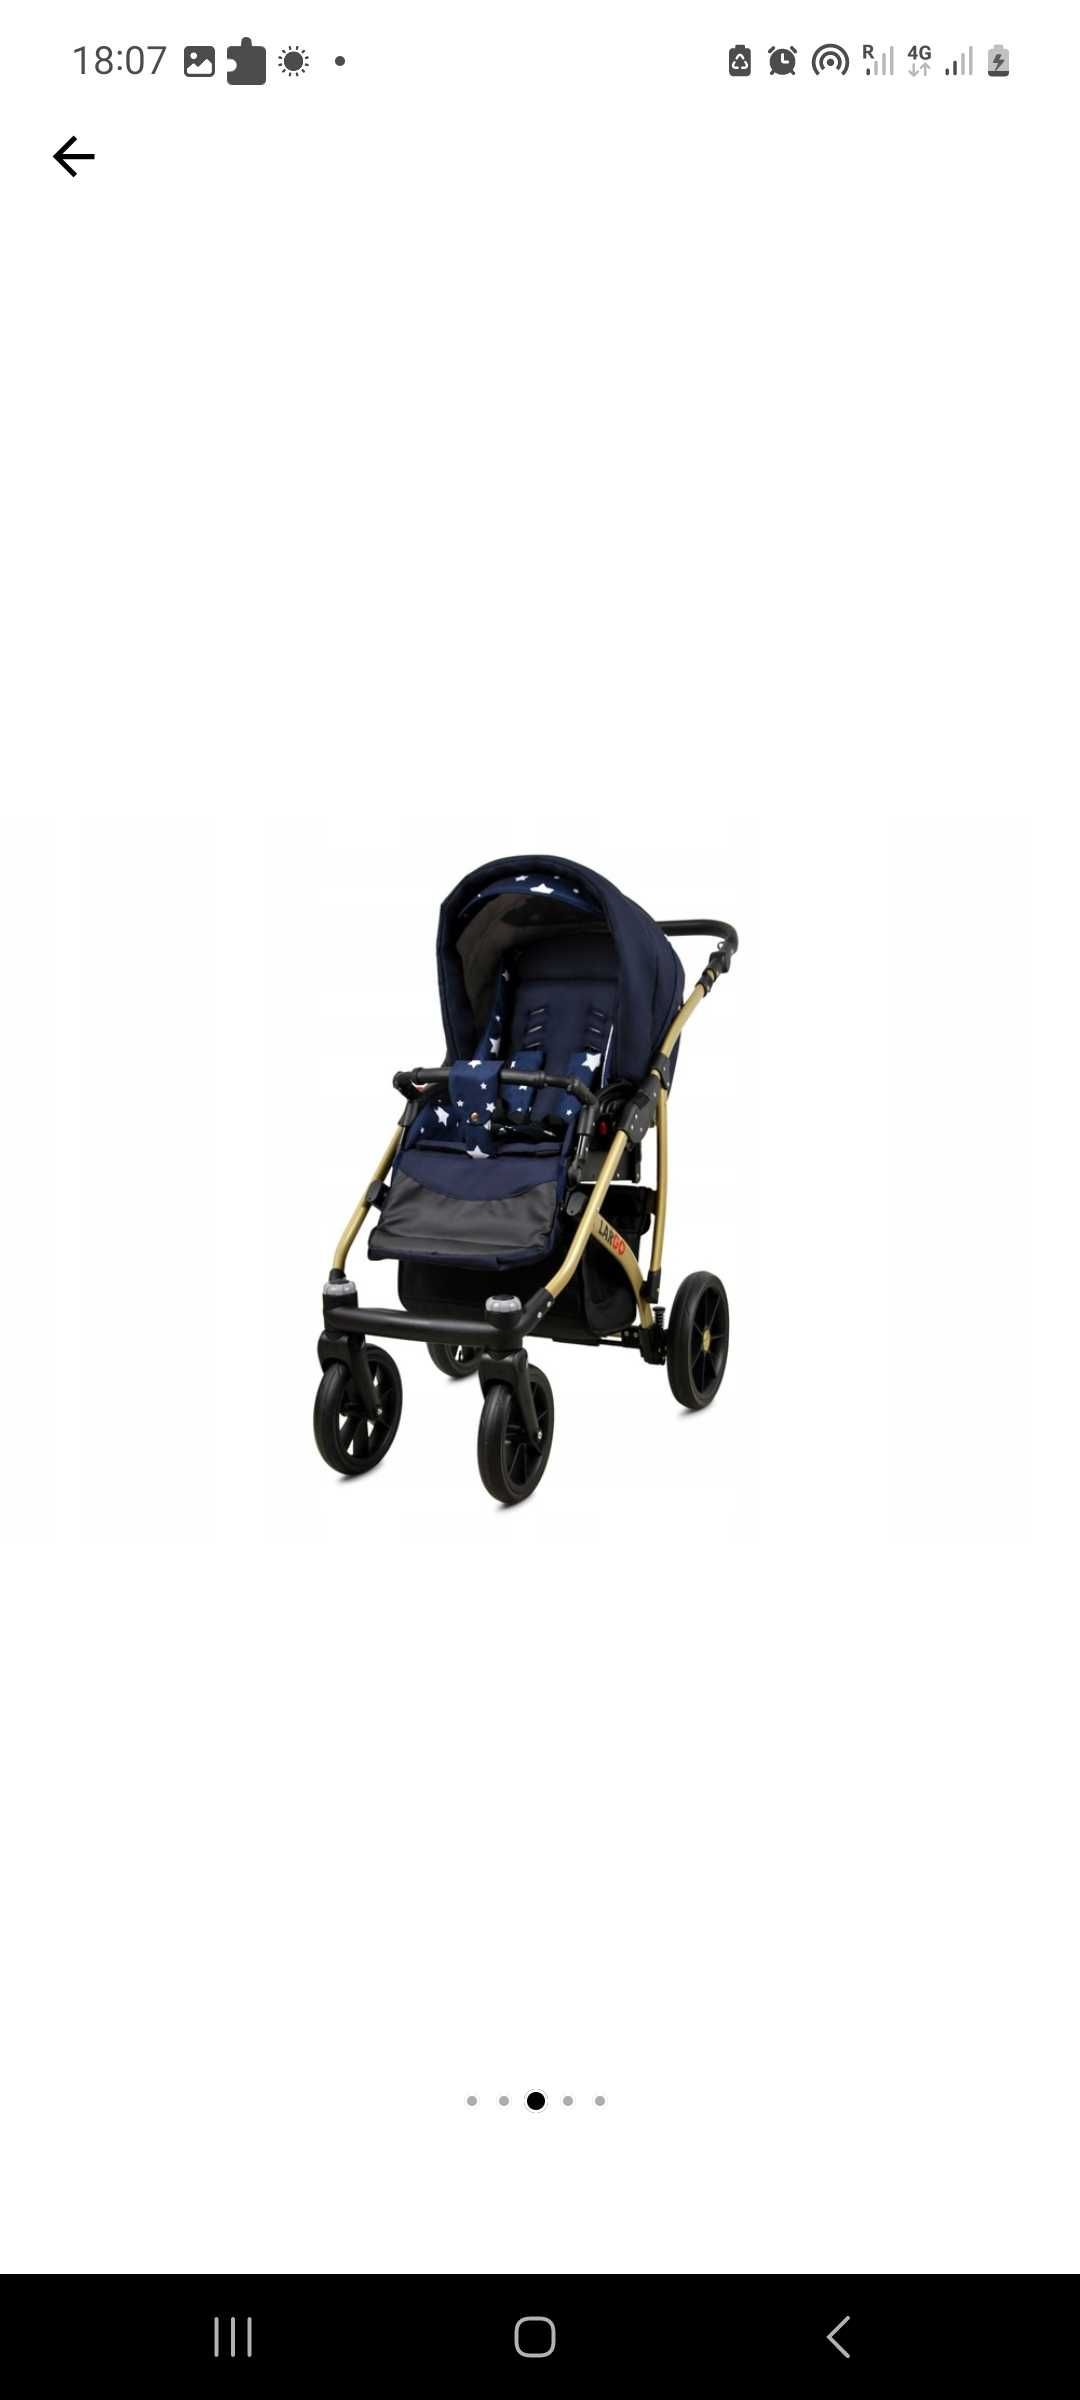 De vânzare cărucior pentru bebeluși 4 în 1 BabyLux Colorlux Gold